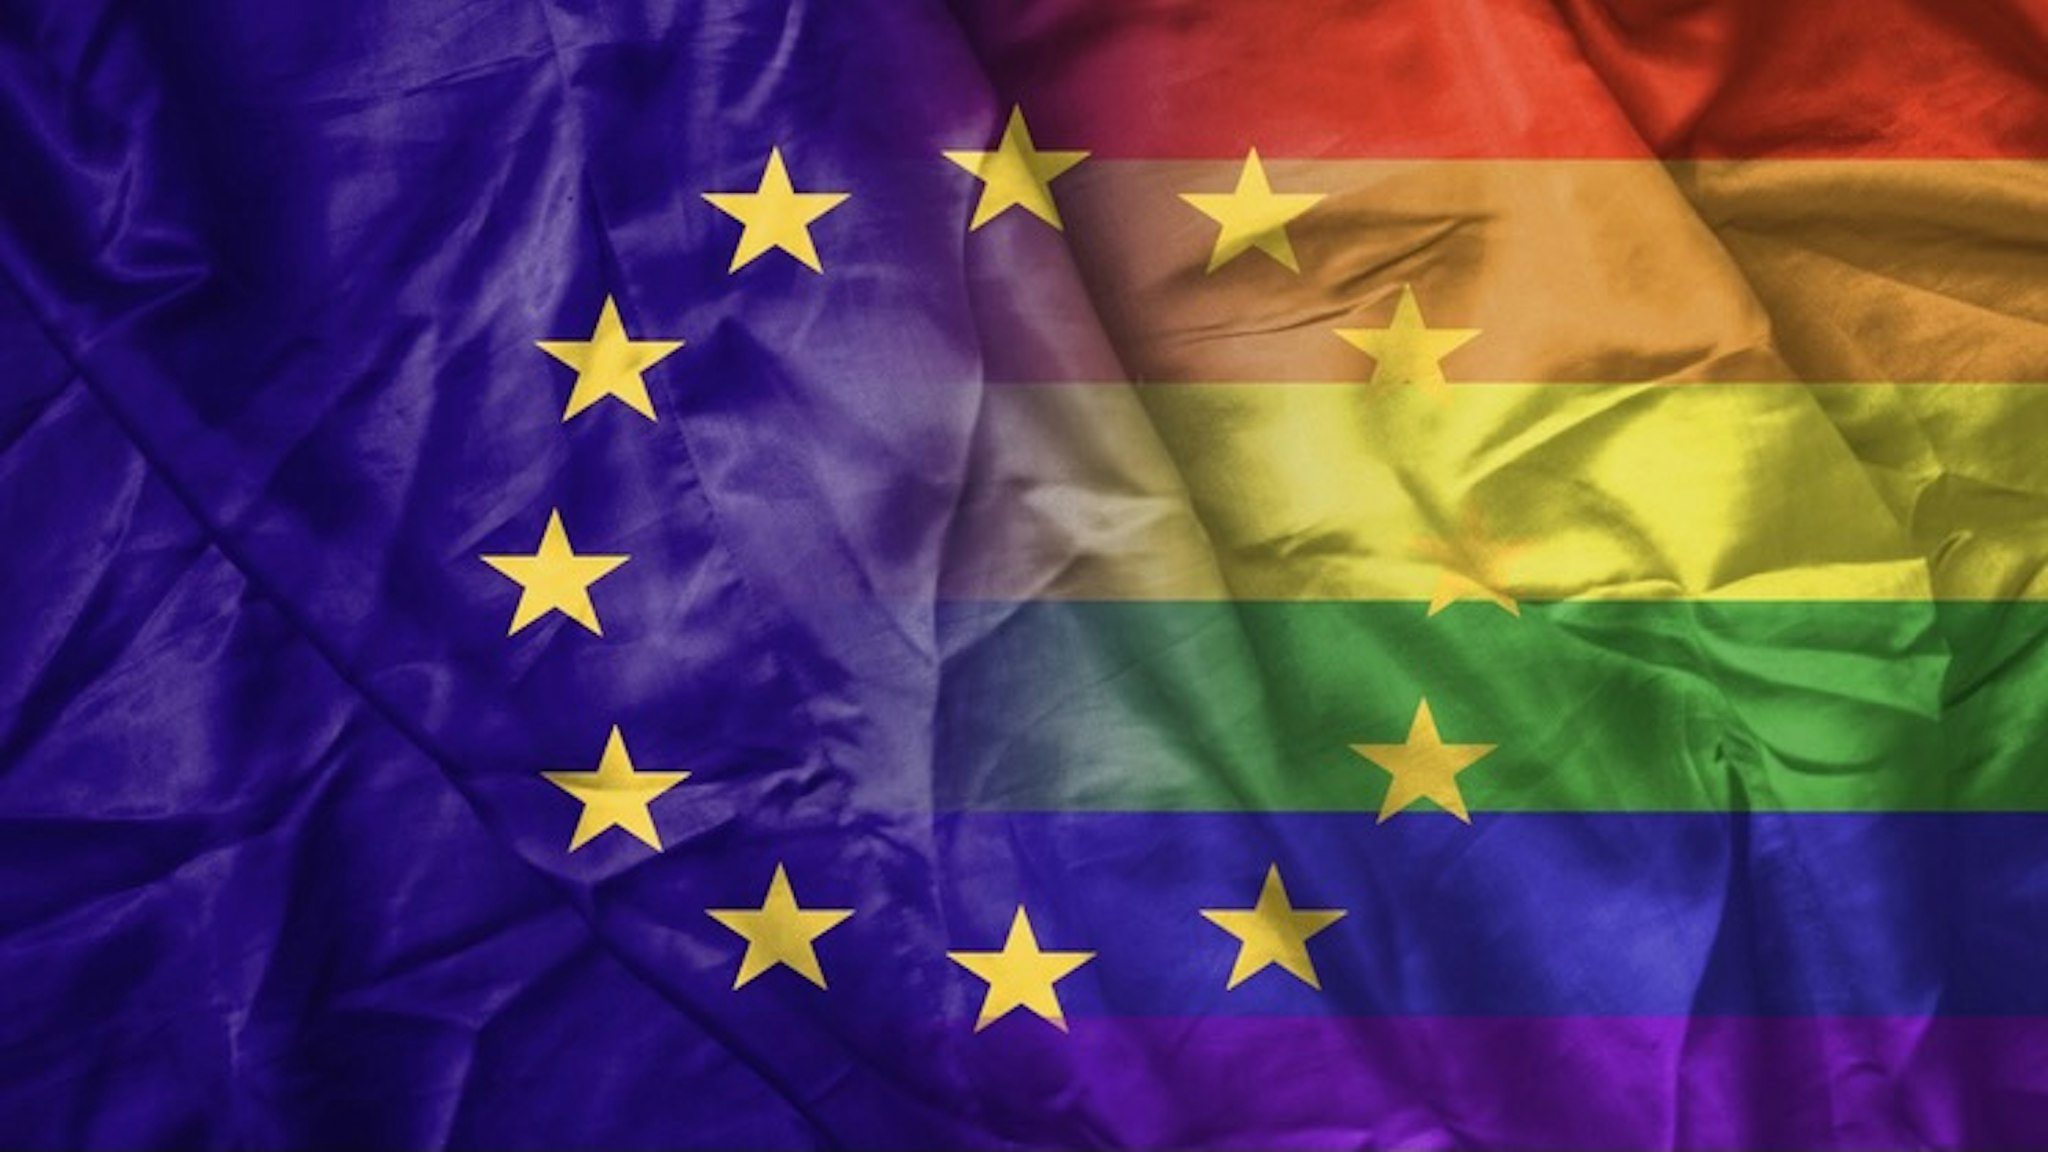 EU and rainbow gay pride flag - stock photo EU and rainbow gay pride flag Martinns via Getty Images